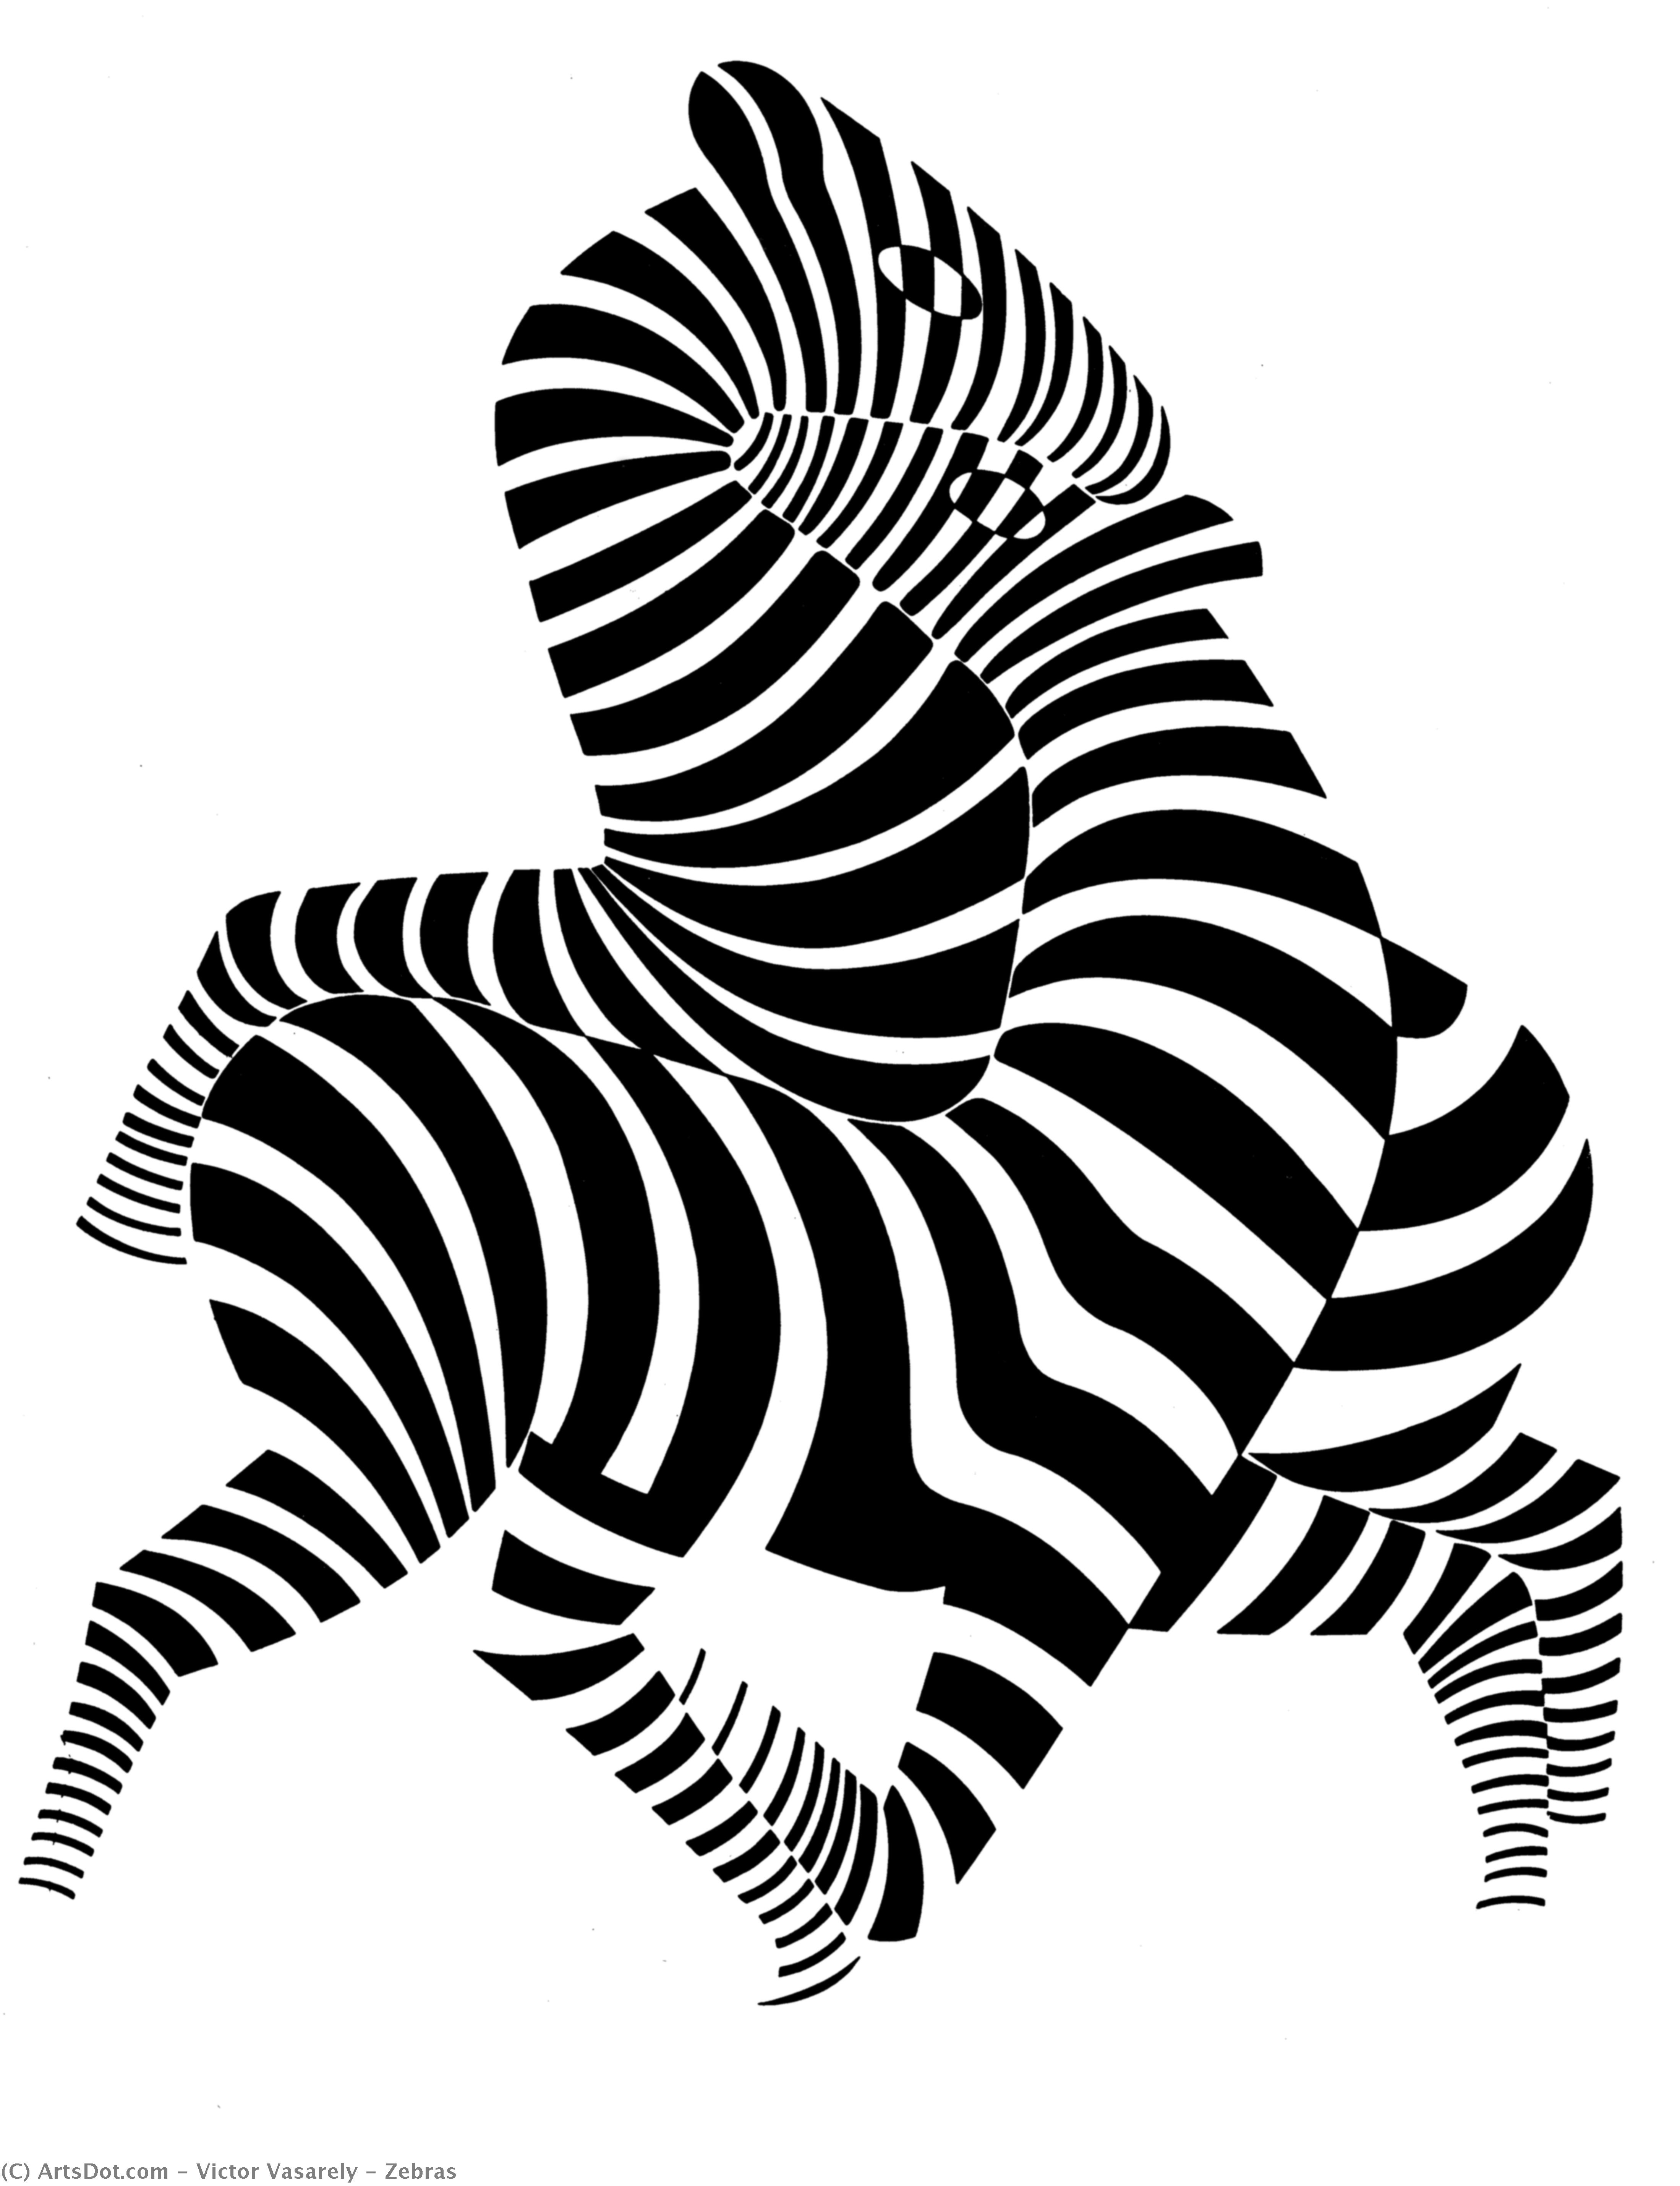 WikiOO.org - Enciclopedia of Fine Arts - Pictura, lucrări de artă Victor Vasarely - Zebras